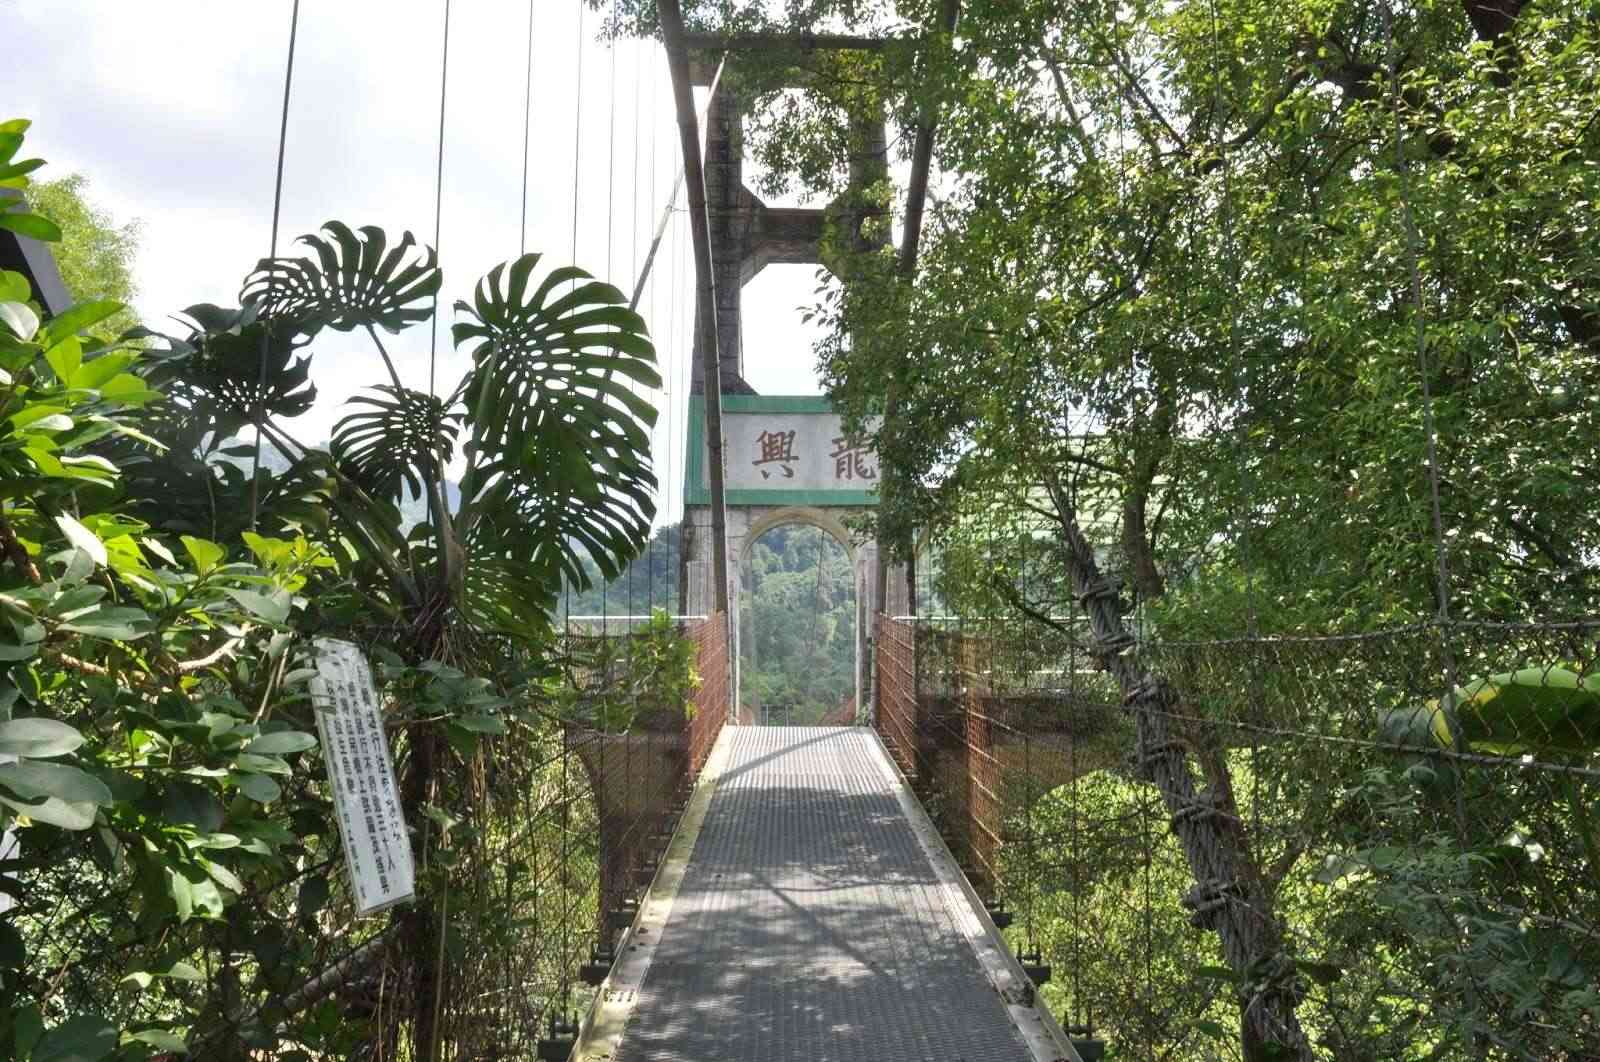 龍興吊橋/ 攝影者: 劉文邦

(由第三方資訊提供)